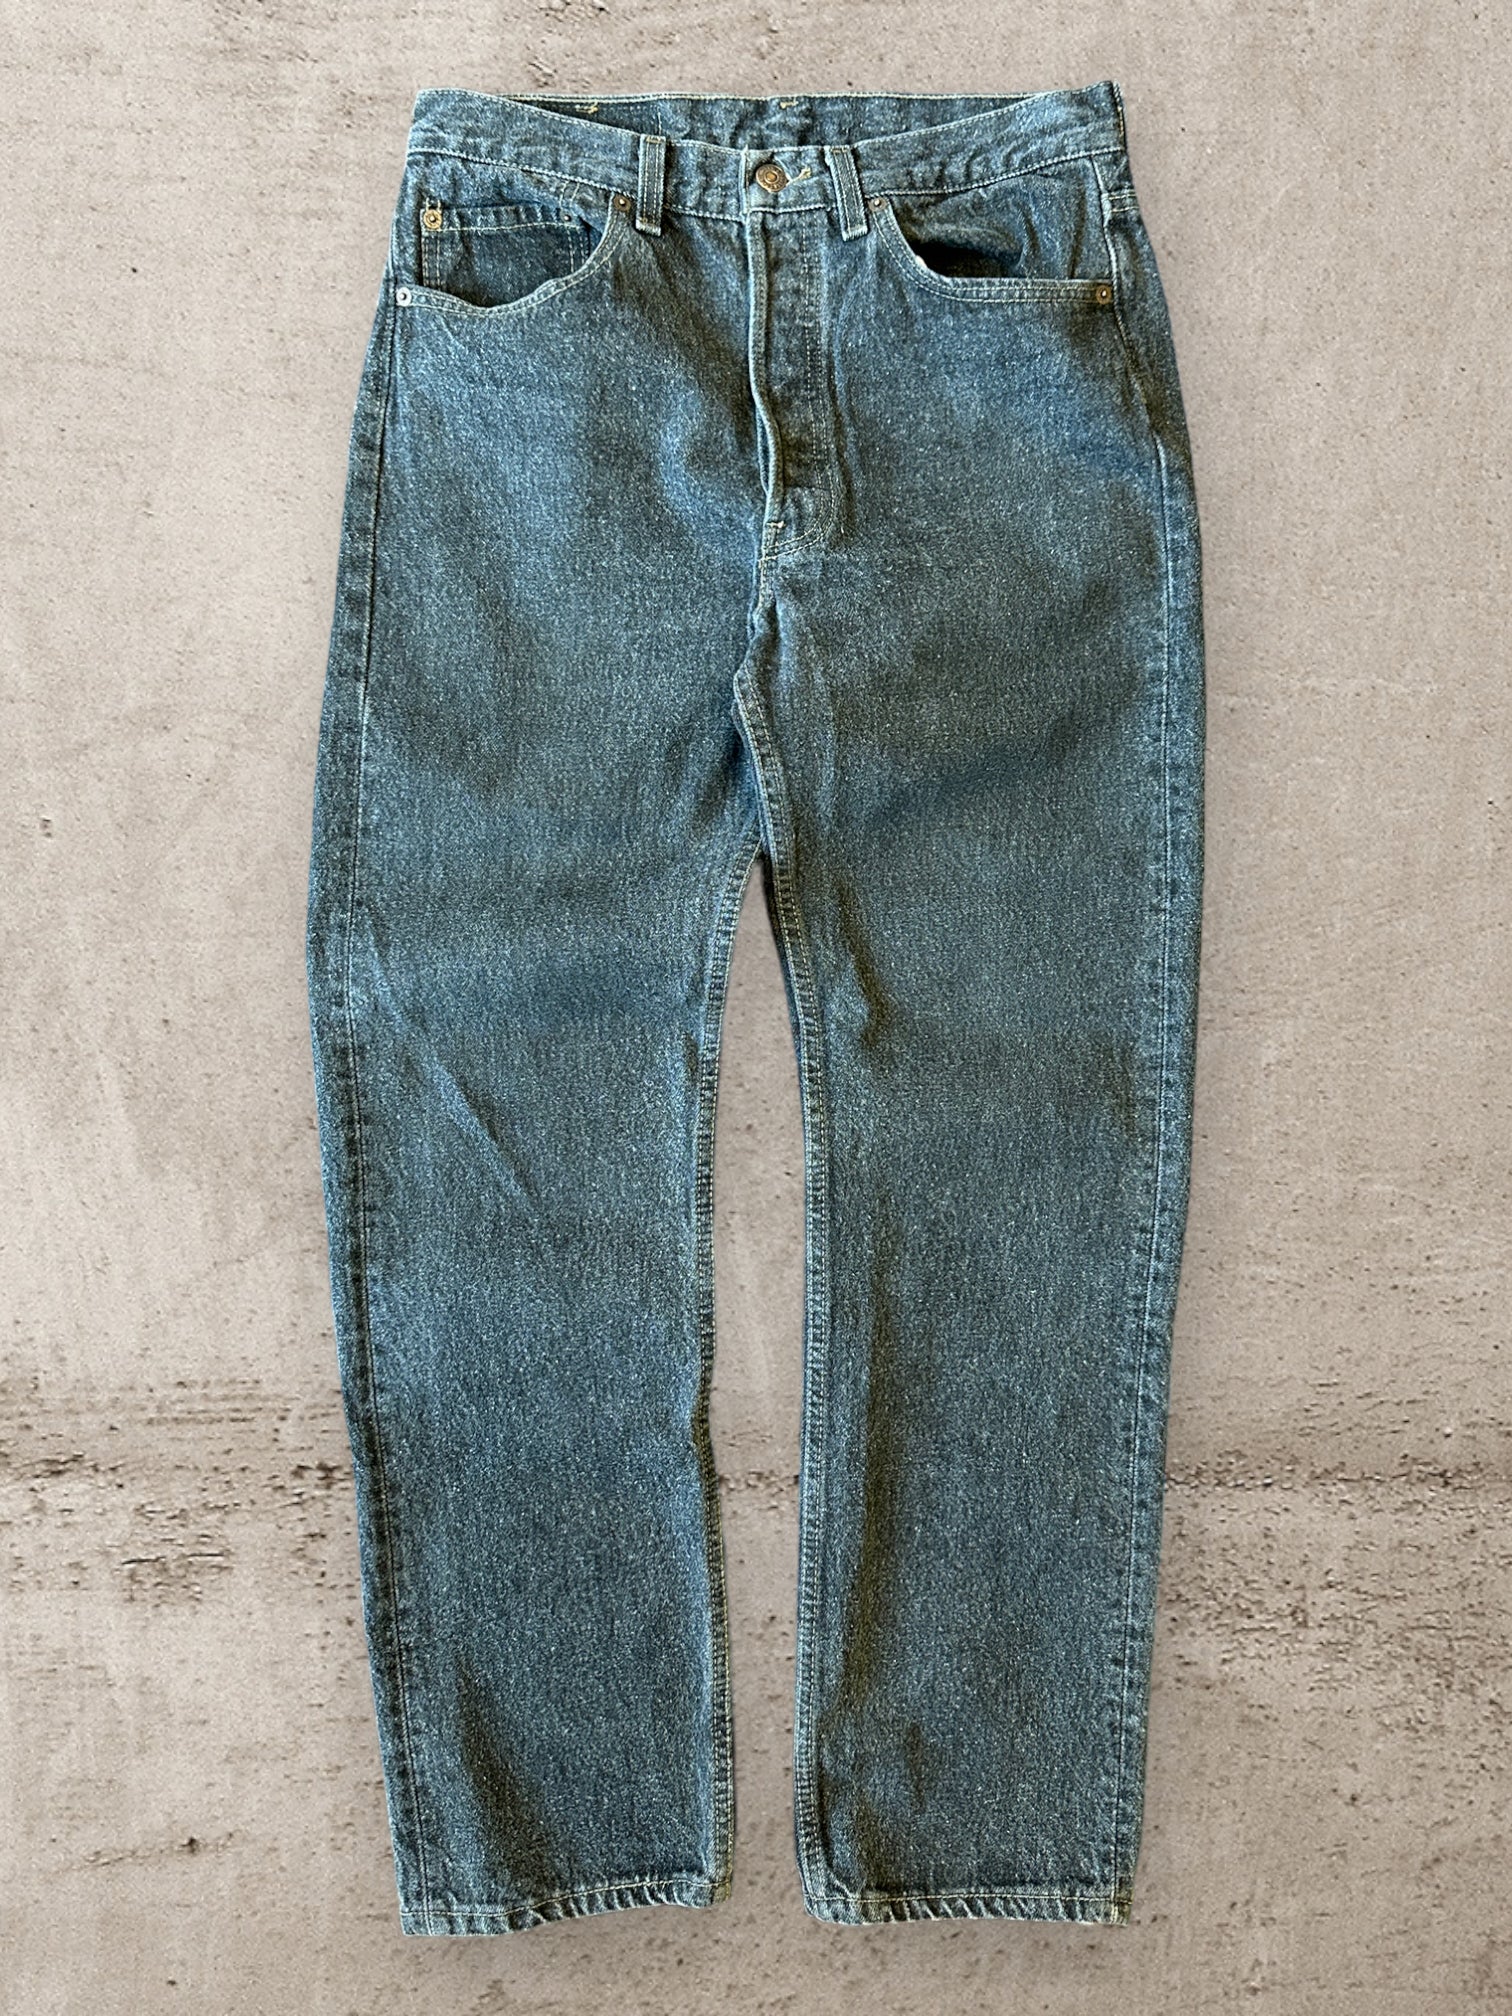 90s Levi’s 501 Button Fly Black Denim Jeans - 30x30